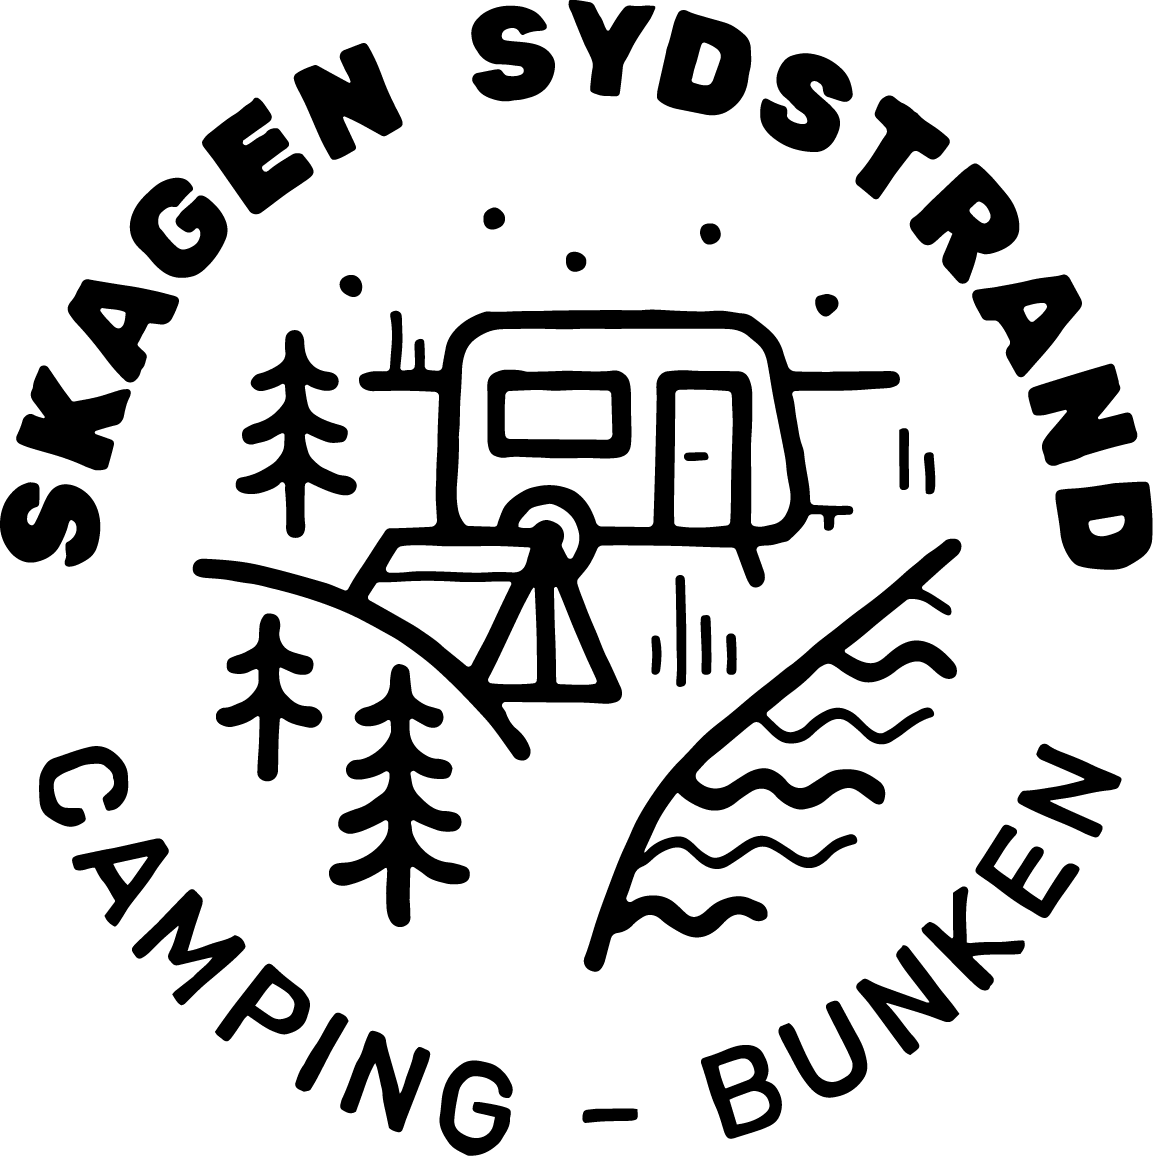  Skagen Sydstrand Camping - Bunken